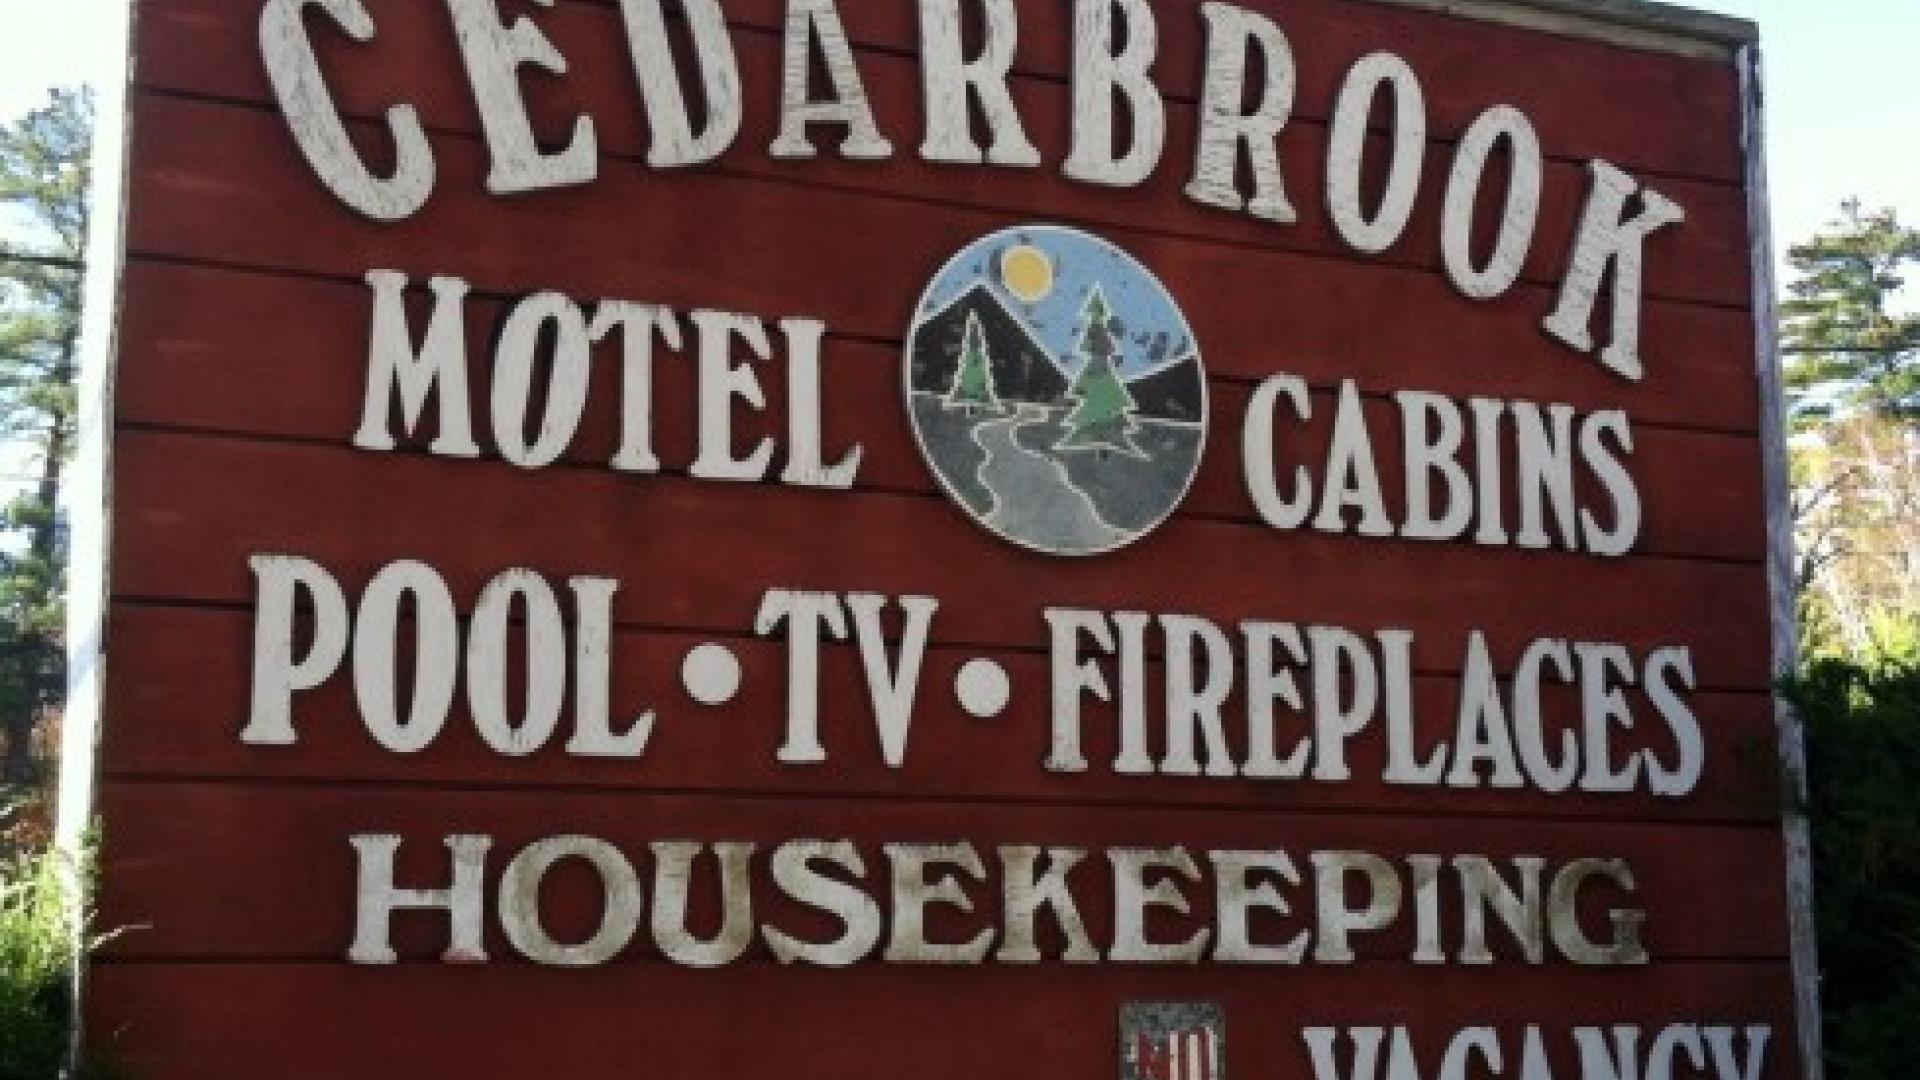 Cedarbrook Motel & Cottages